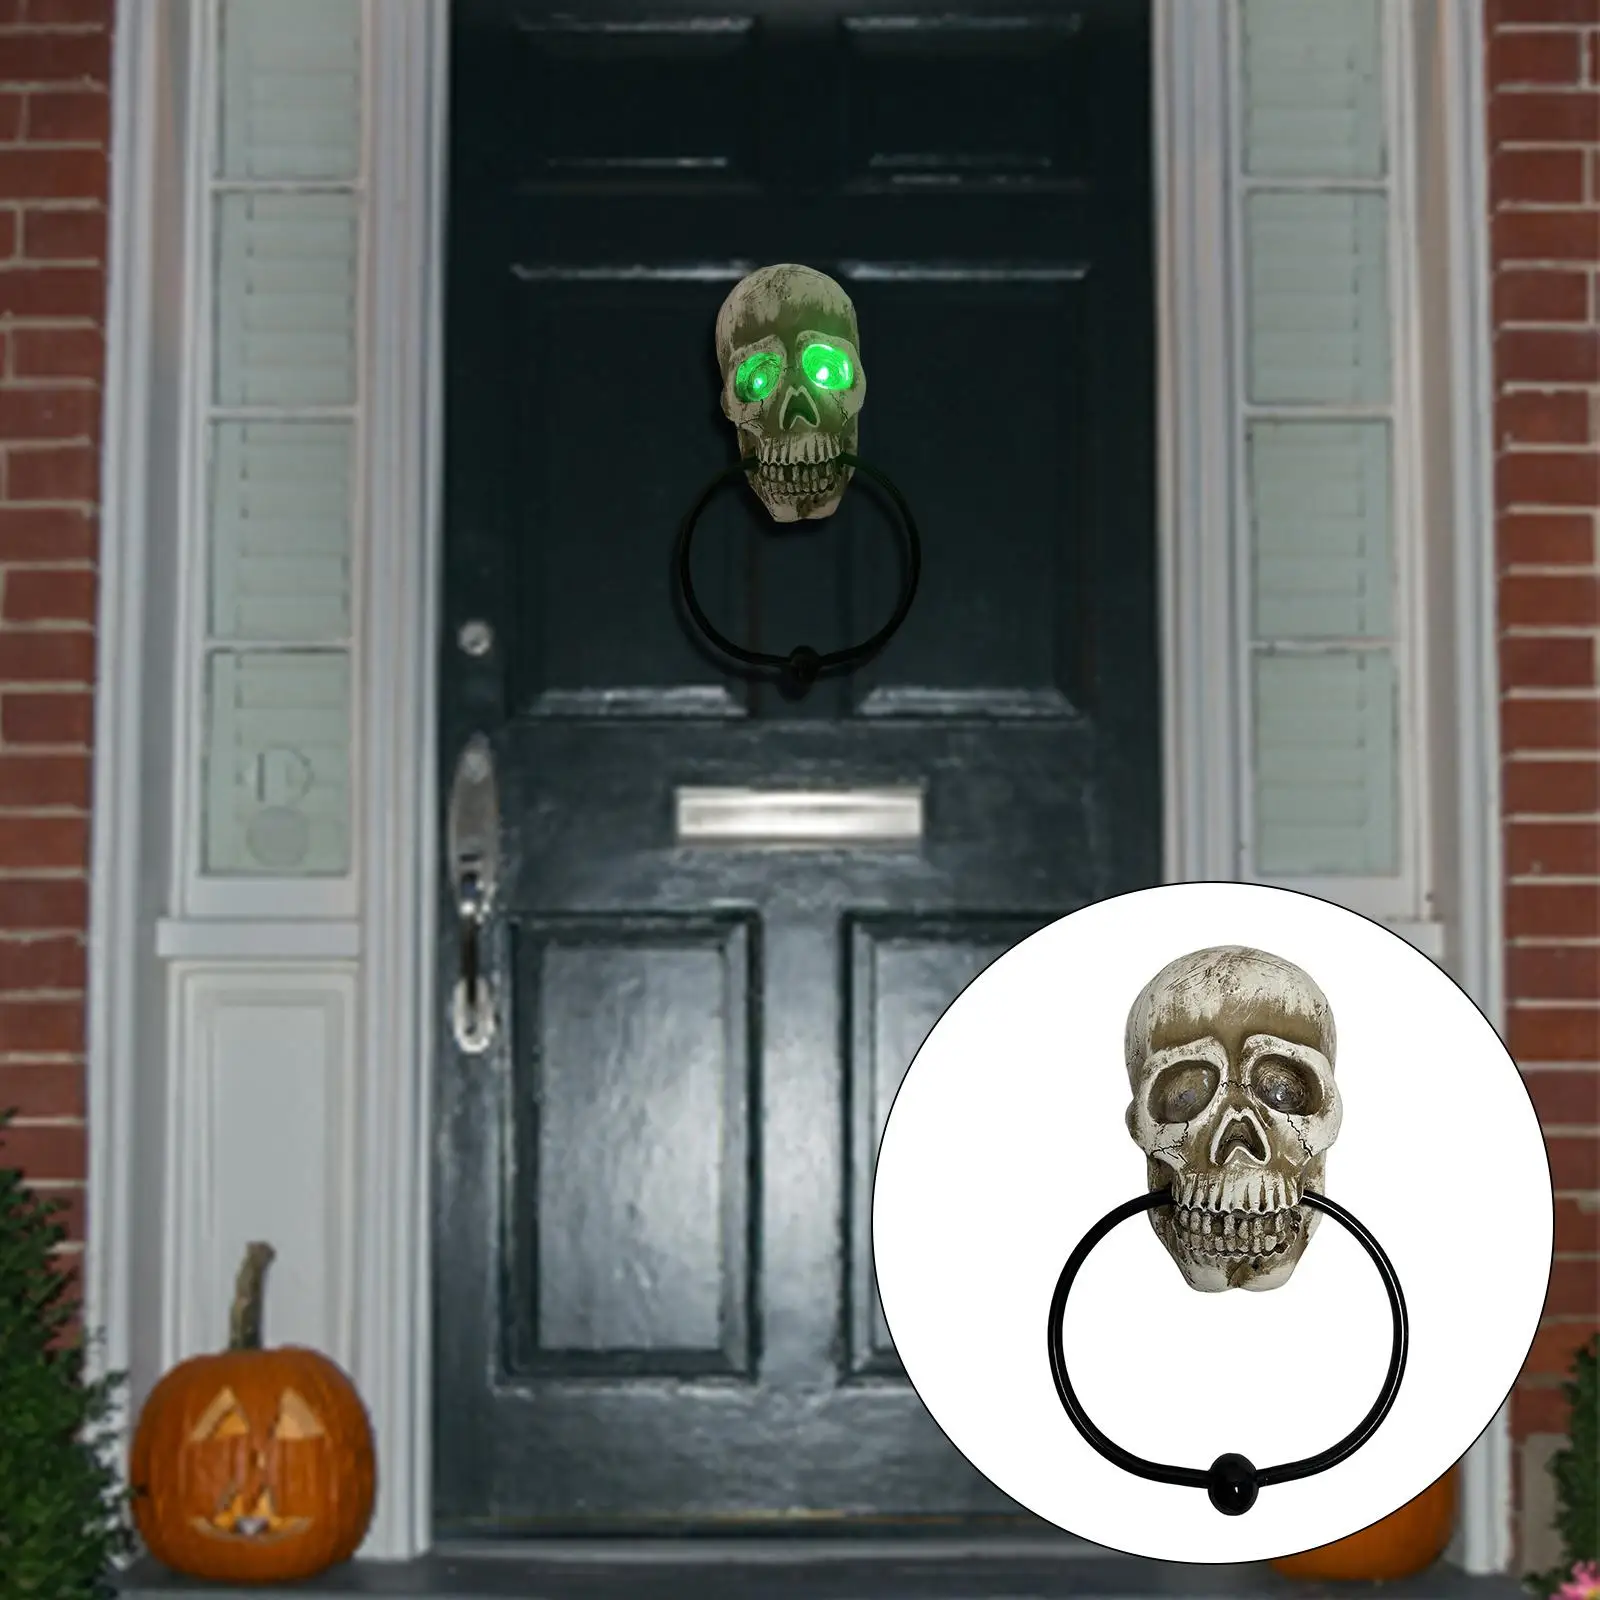 Funny Door Knocker Doorknocker Halloween Decoration for Home Haunted House